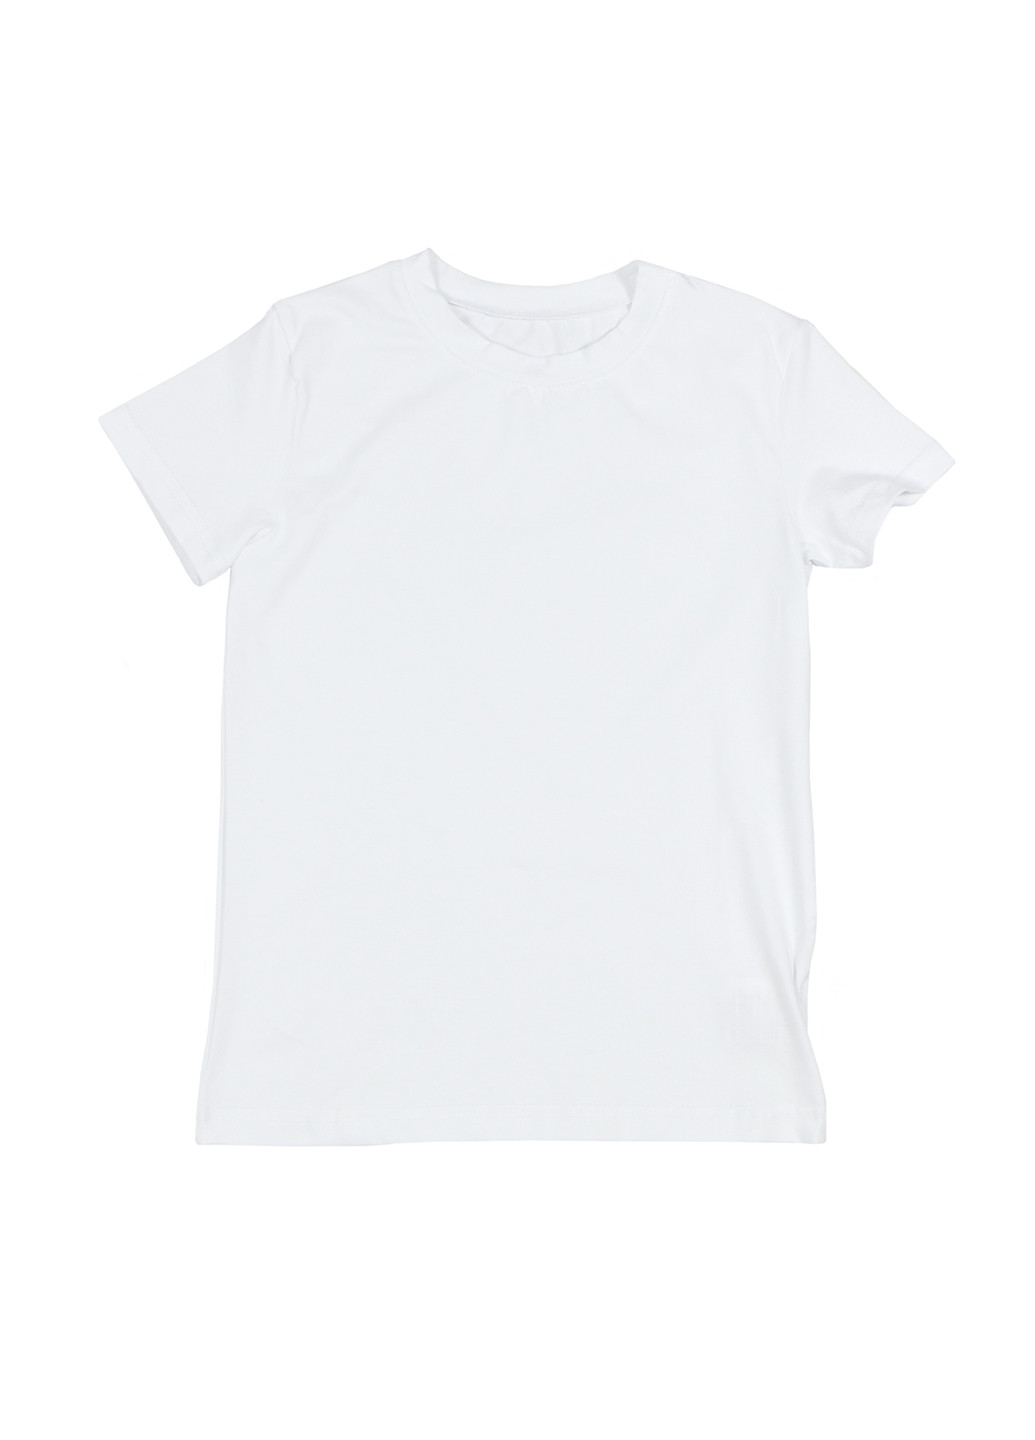 Біла літня футболка з коротким рукавом DaNa-kids